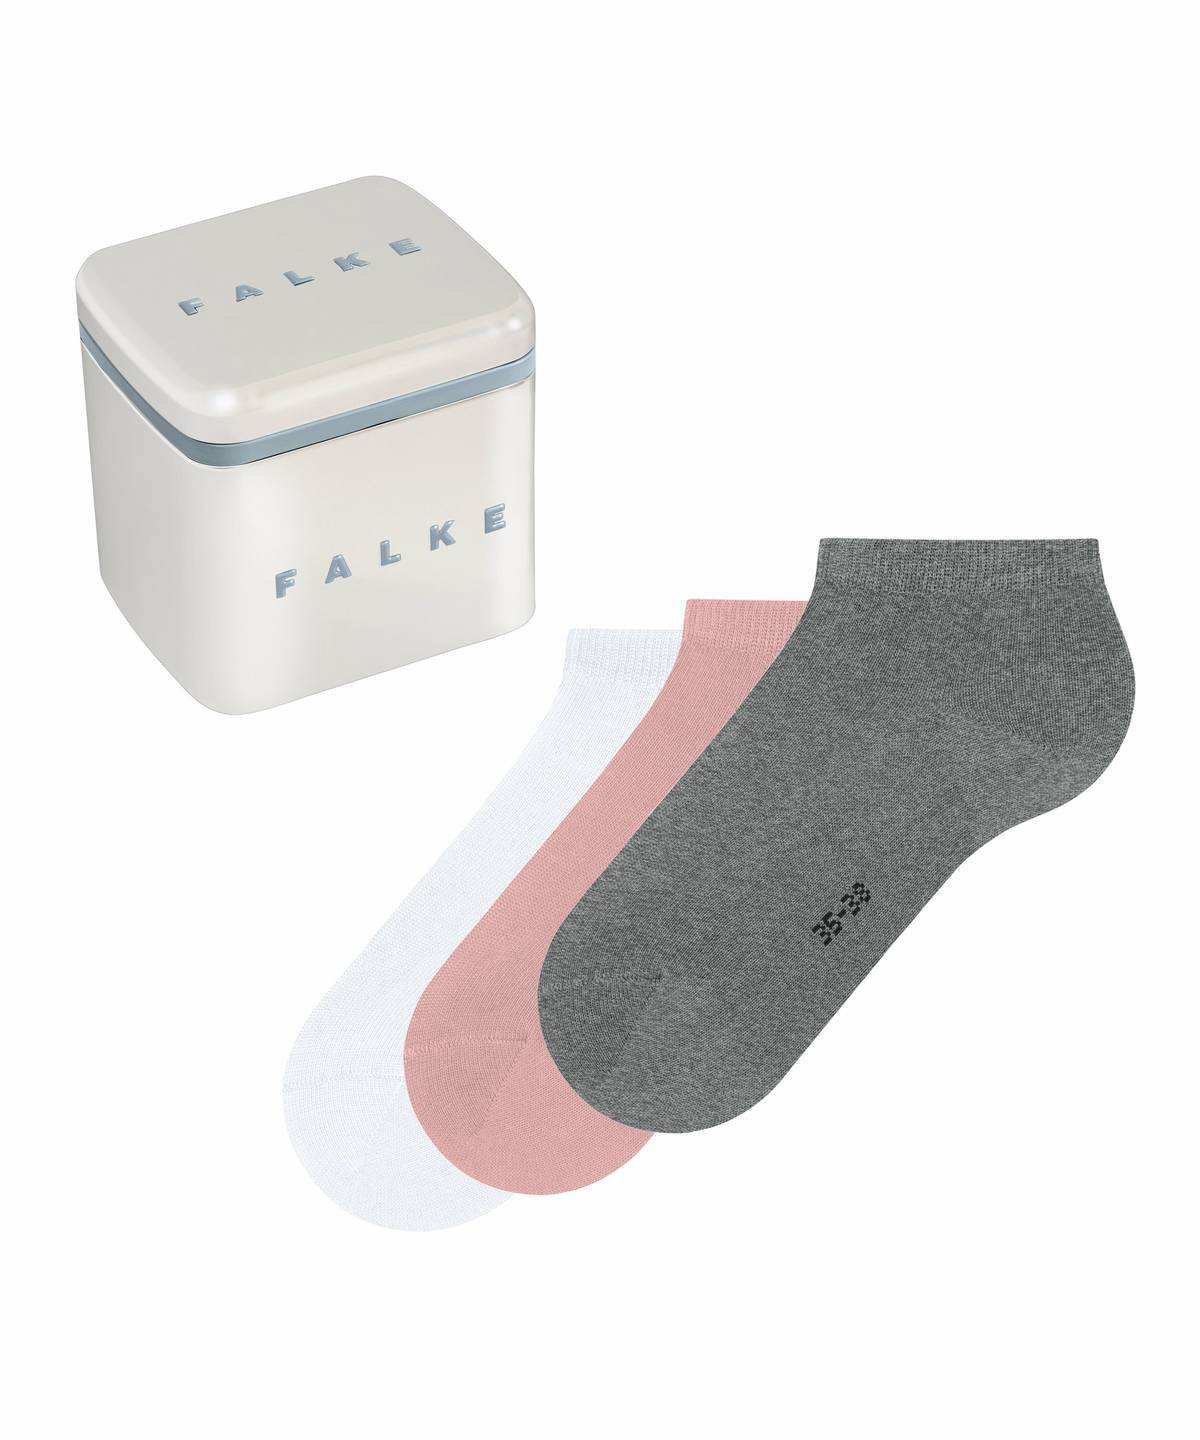 Falke Damen Socken One size Hersteller: Falke Bestellnummer:4031309199740